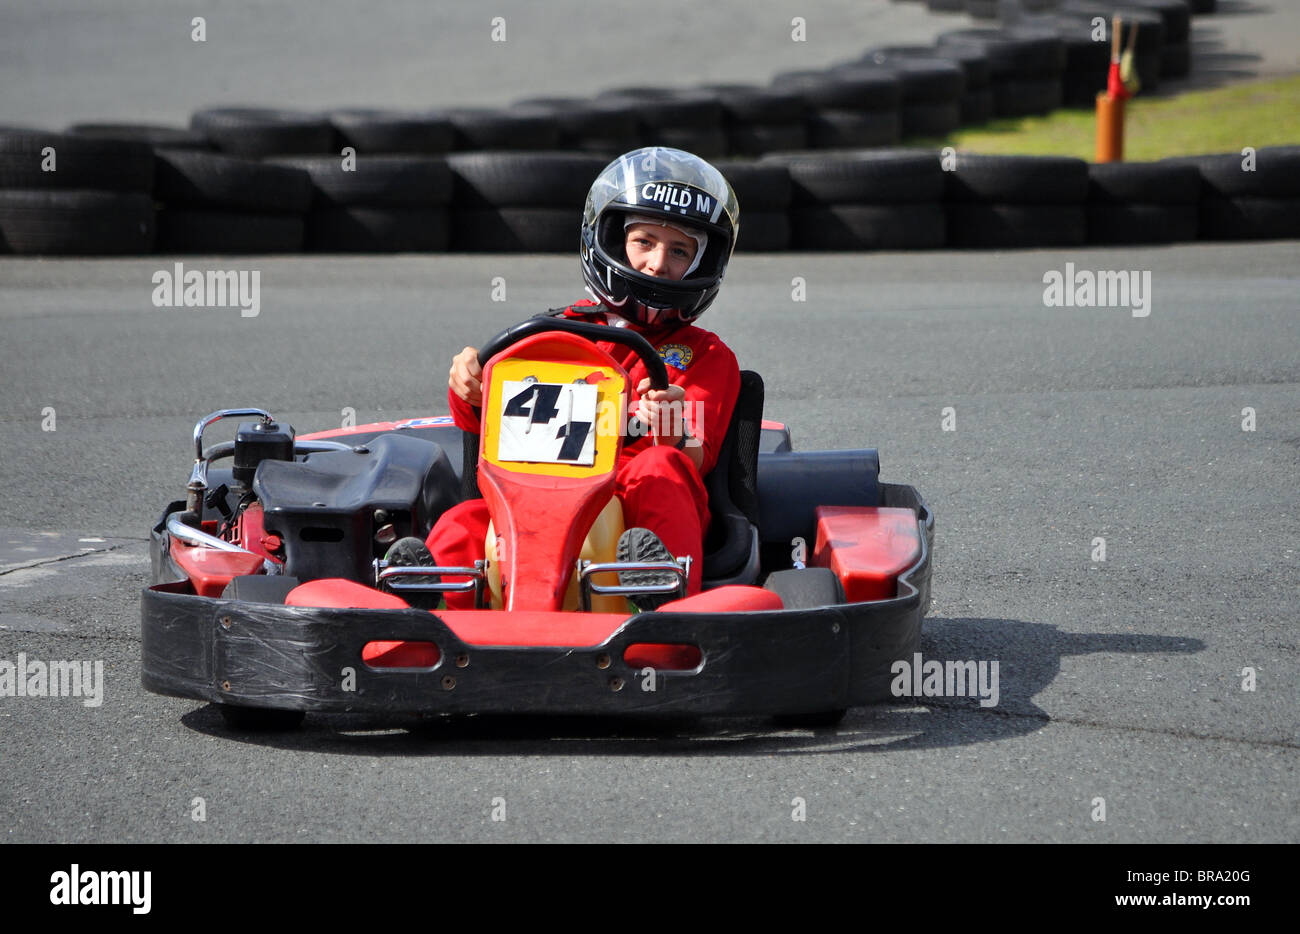 ein kleiner Junge bei einem Go-kart Racing Event, uk Stockfoto